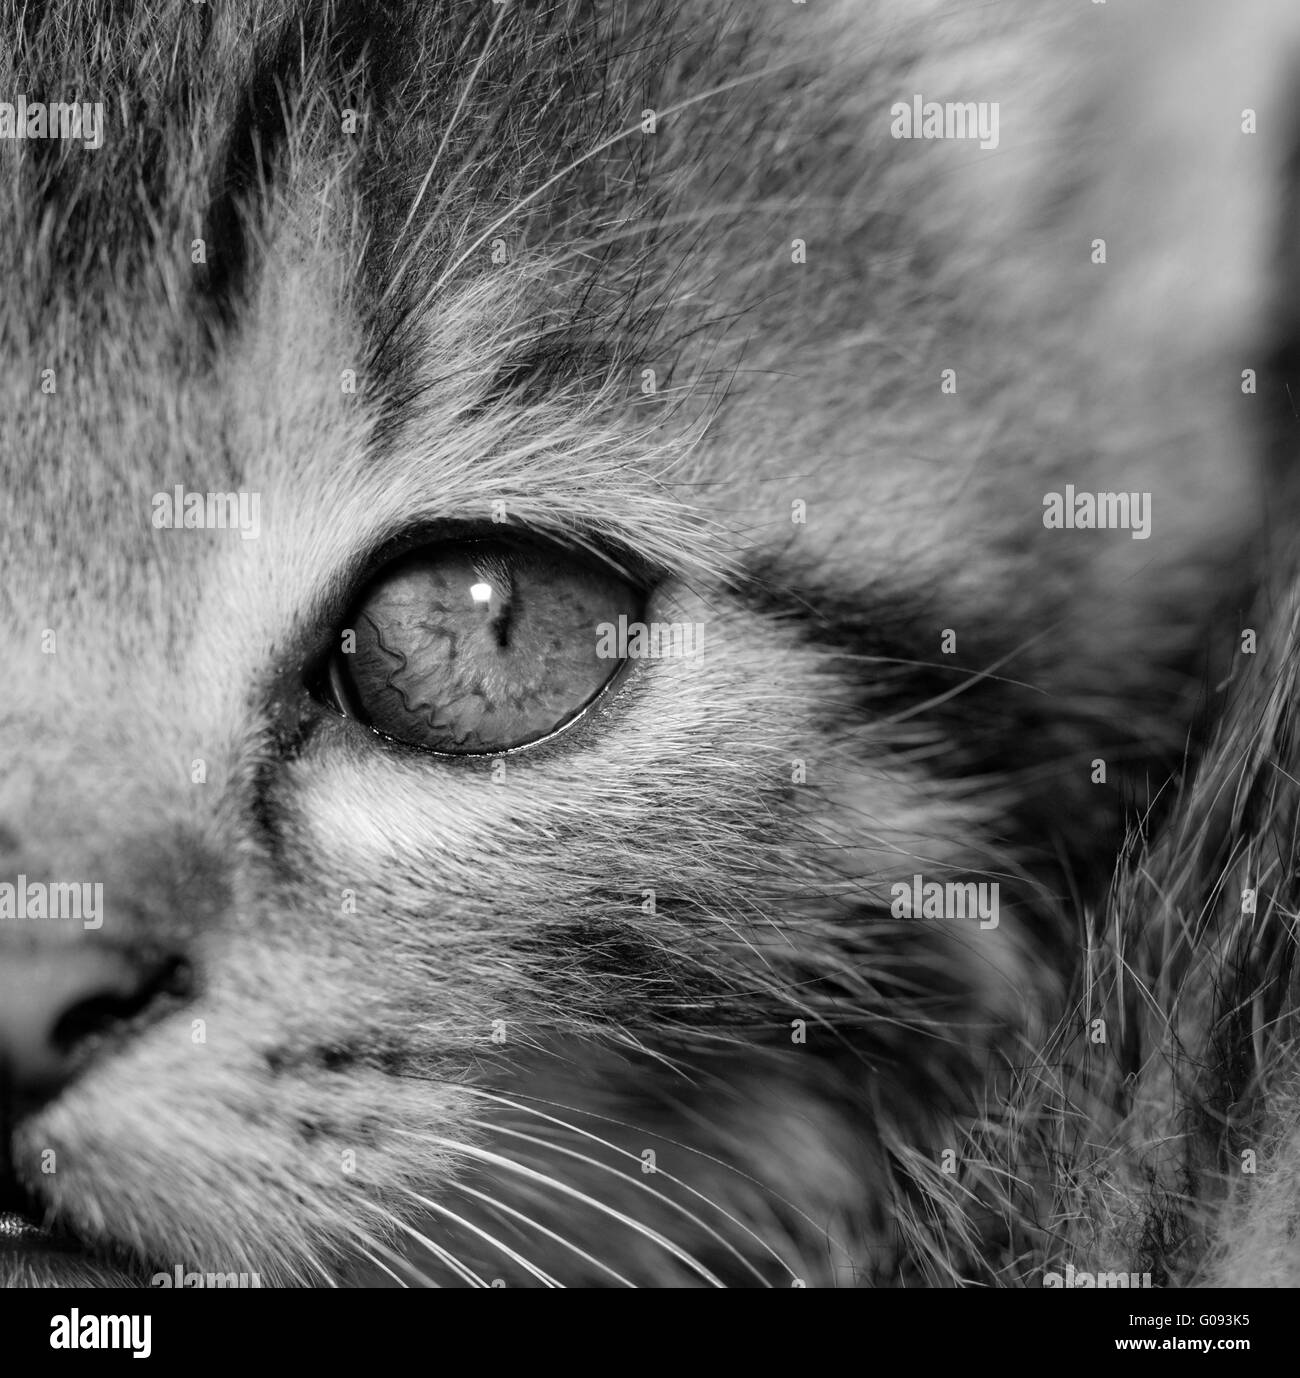 Close-up ritratto di tabby gatto di casa - bianco e nero Foto Stock